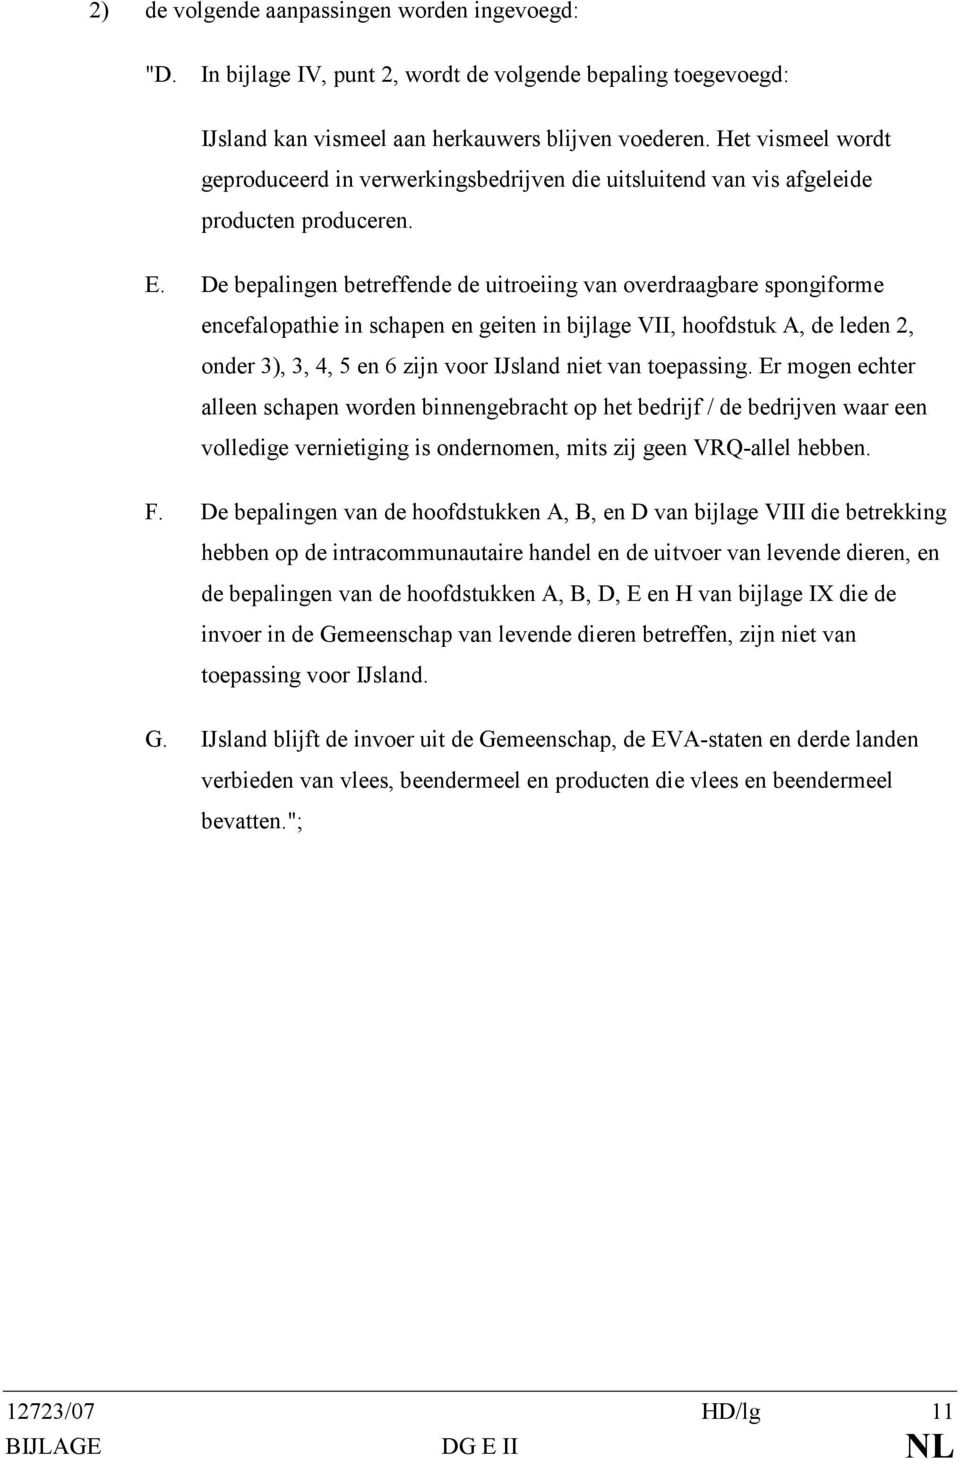 De bepalingen betreffende de uitroeiing van overdraagbare spongiforme encefalopathie in schapen en geiten in bijlage VII, hoofdstuk A, de leden 2, onder 3), 3, 4, 5 en 6 zijn voor IJsland niet van